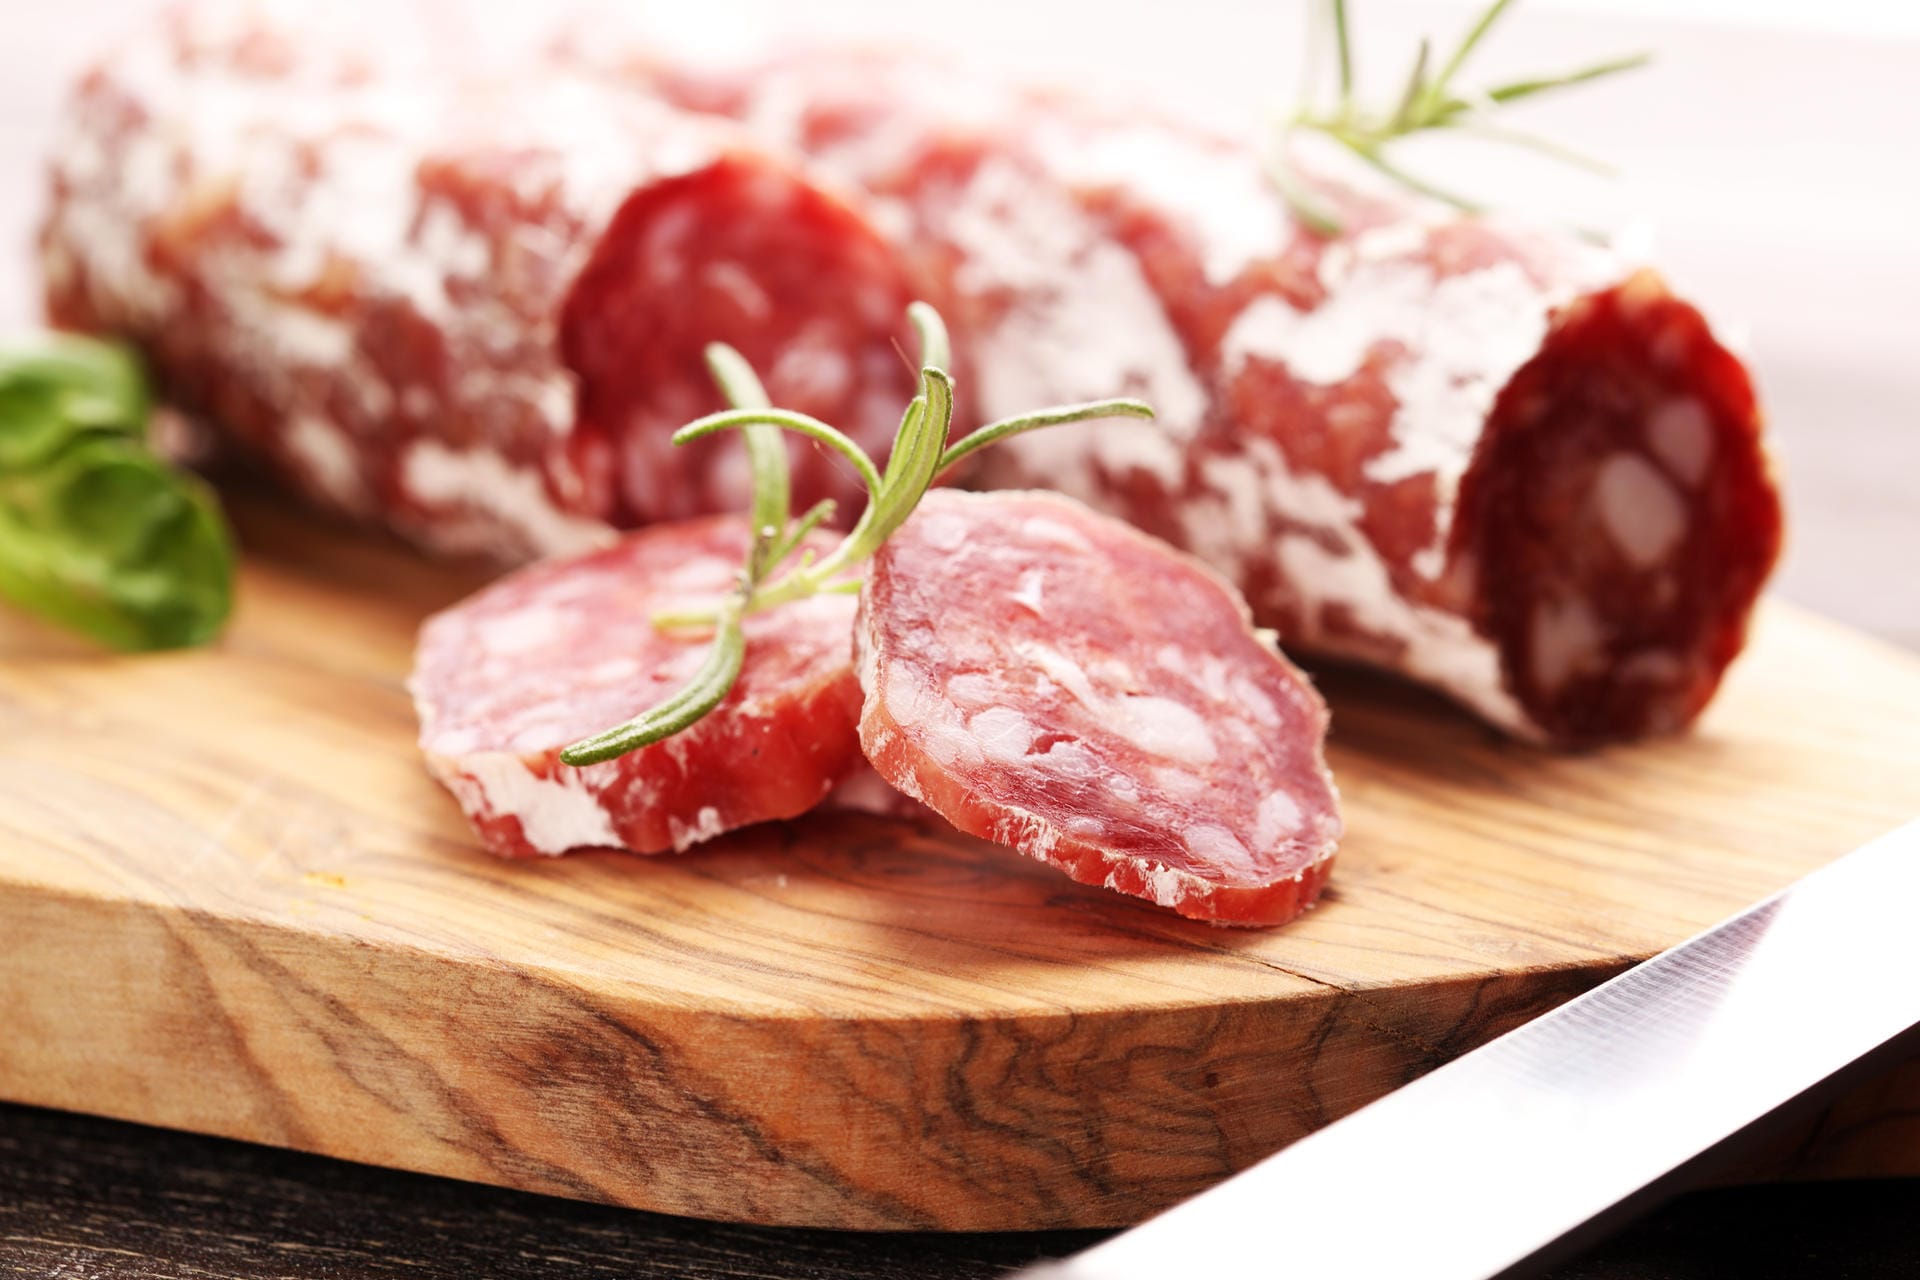 Schlechte Nachricht für alle Salami-Fans: Nicht nur rotes Fleisch, auch Wurstprodukte sollte man nur in Maßen genießen. Wer täglich 50 Gramm Wurst verzehrt, erhöht sein Risiko um 25 bis 40 Prozent.